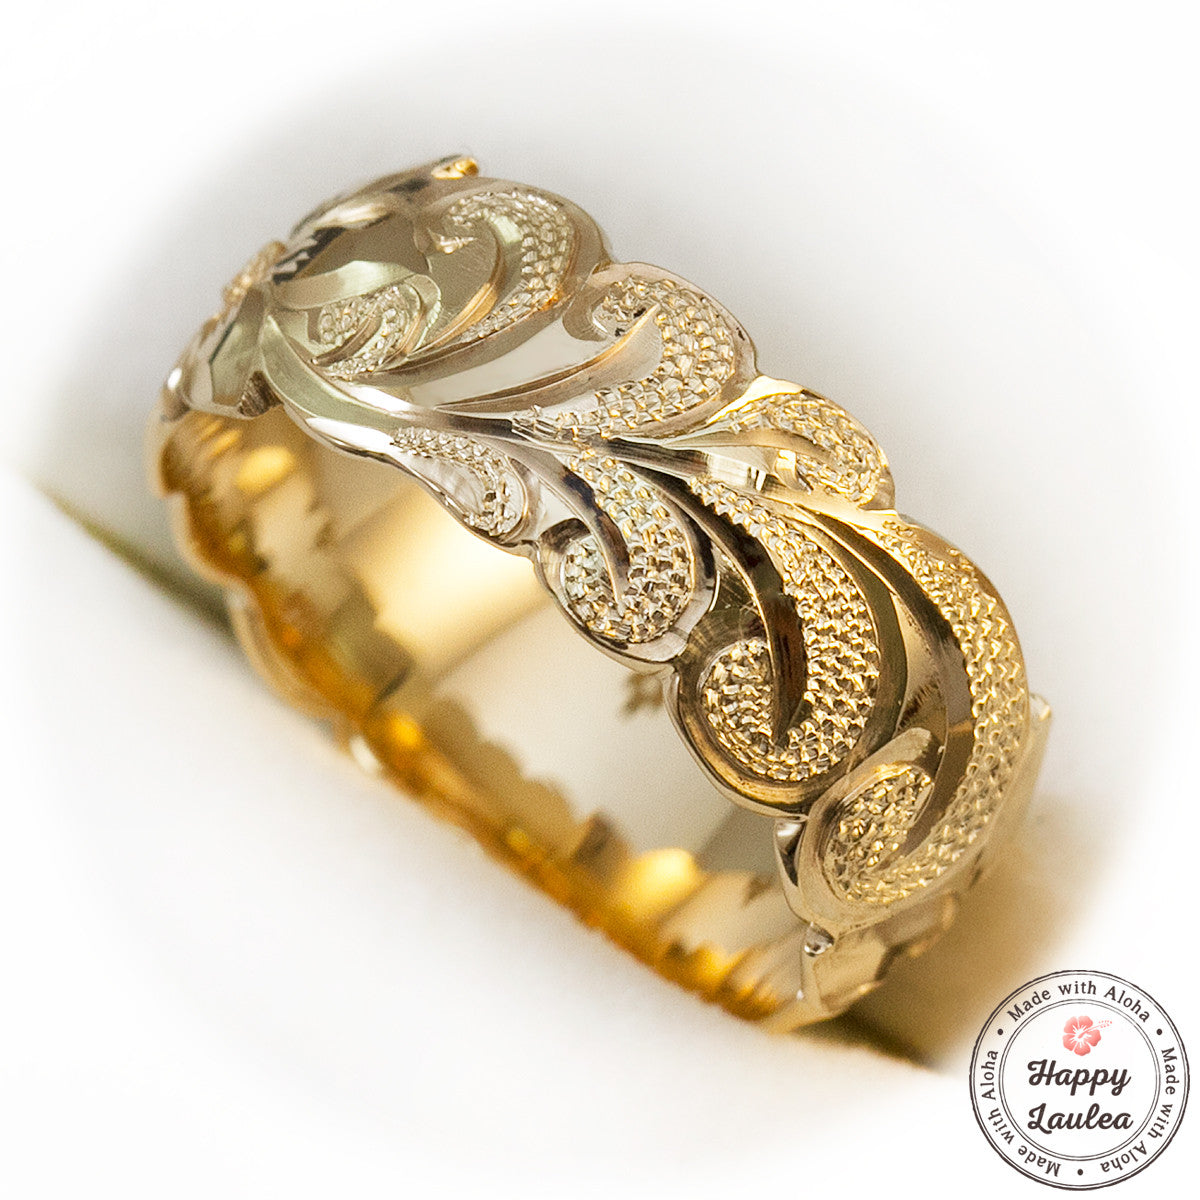 14k Gold Hawaiian Jewelry Ring [8mm width] Hand Engraved Scroll Wave Pattern - Barrel Shape